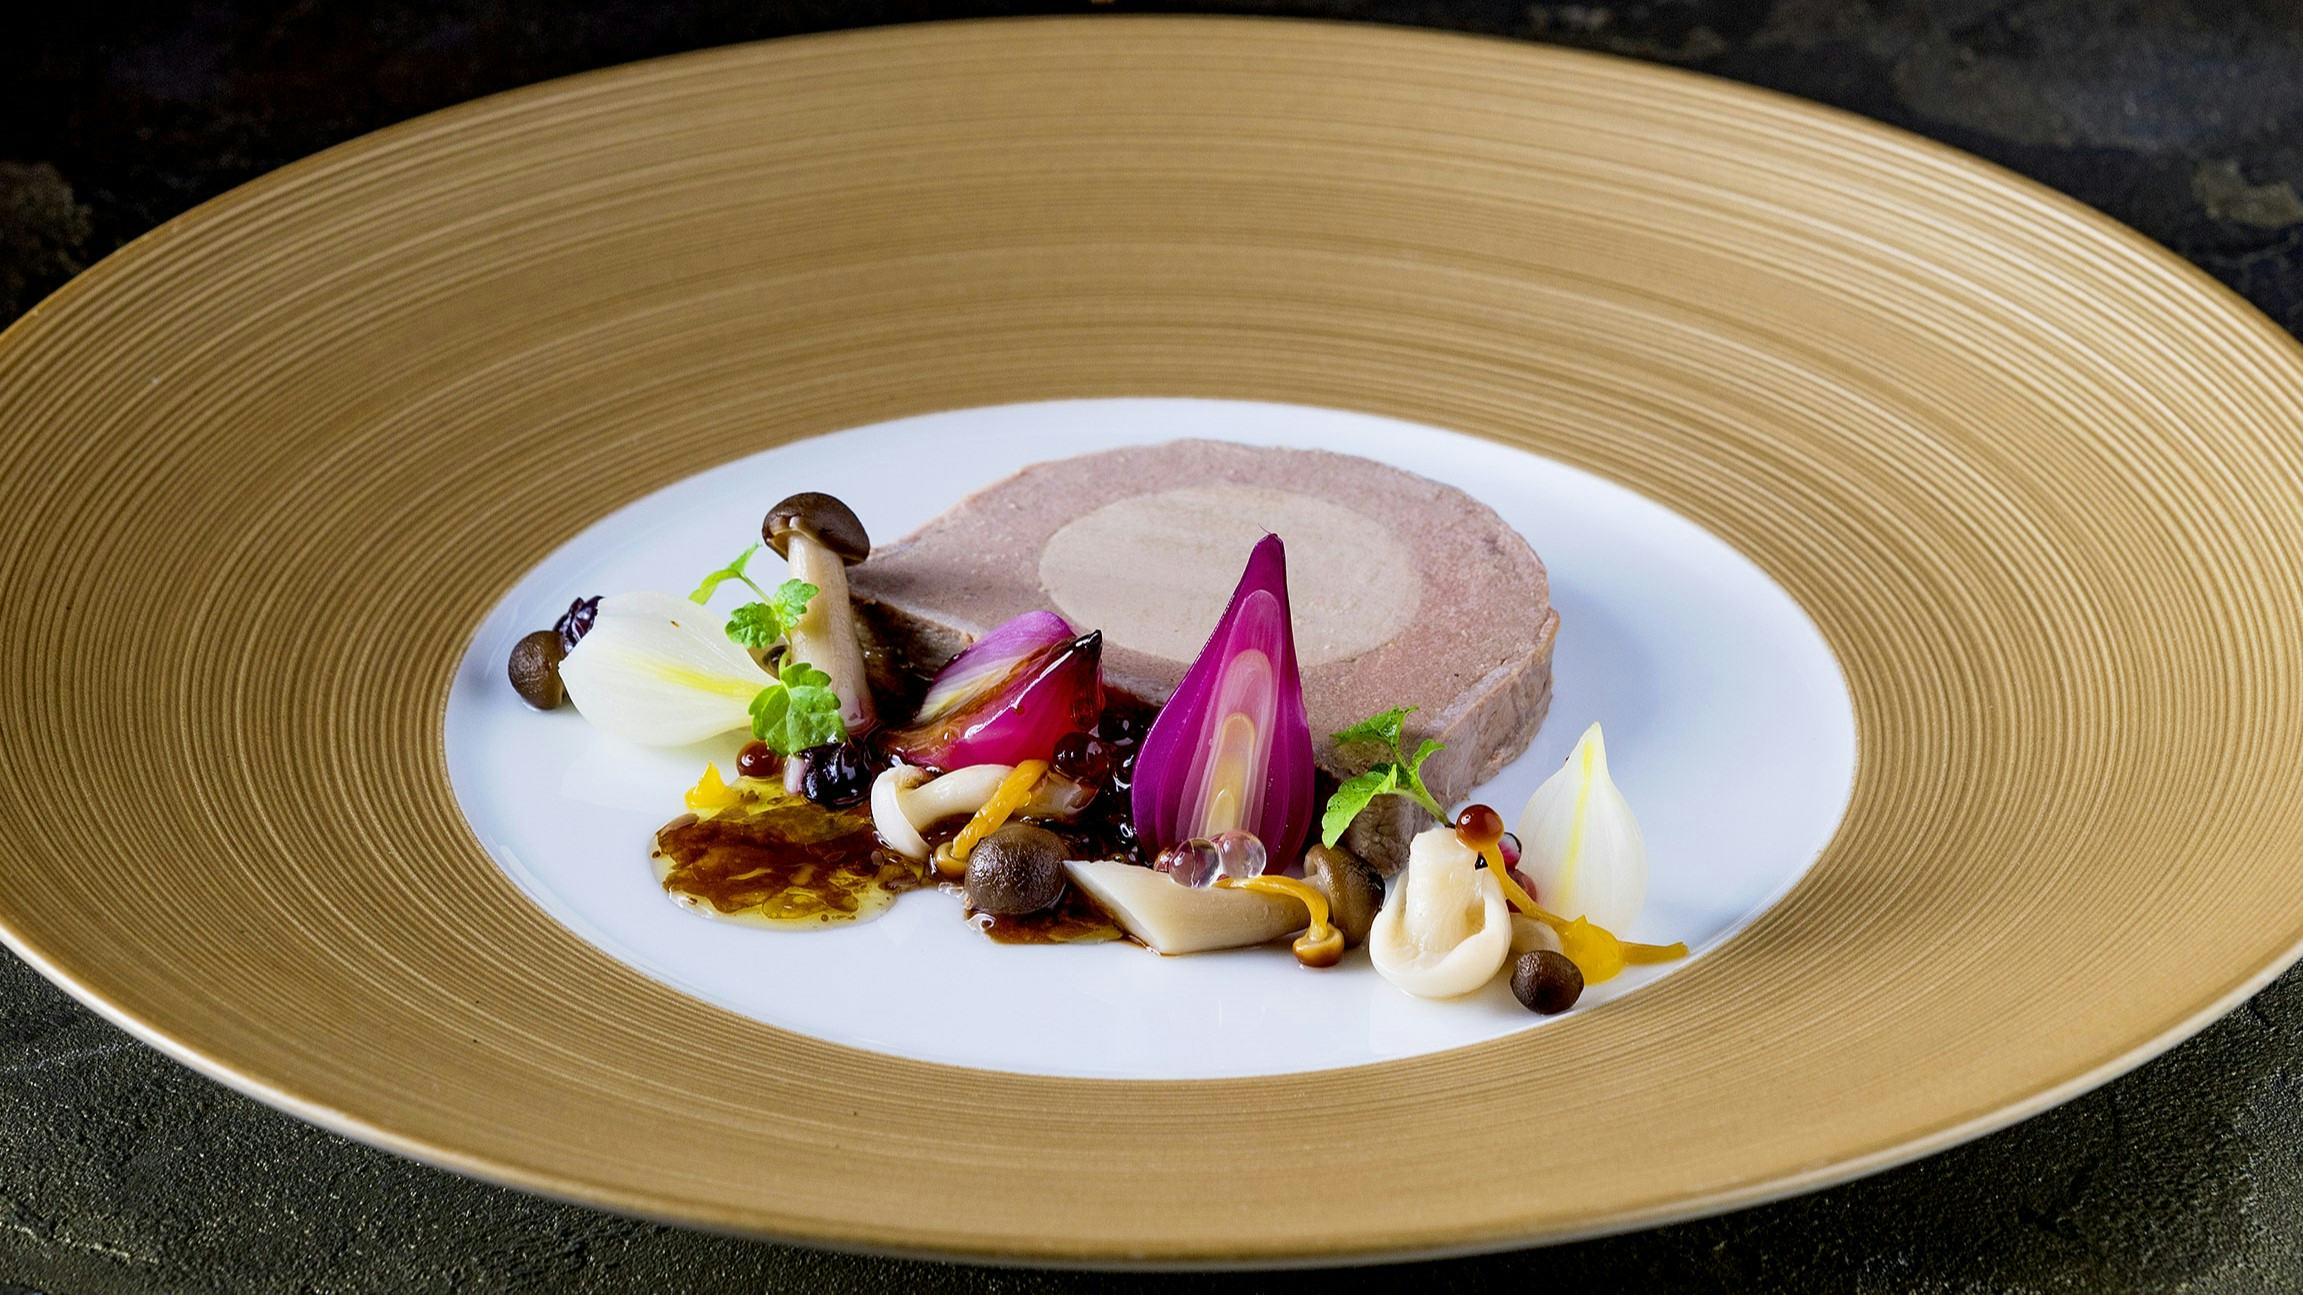 Bijna helft sterrenrestaurants serveert foie gras, tot teleurstelling van Wakker Dier